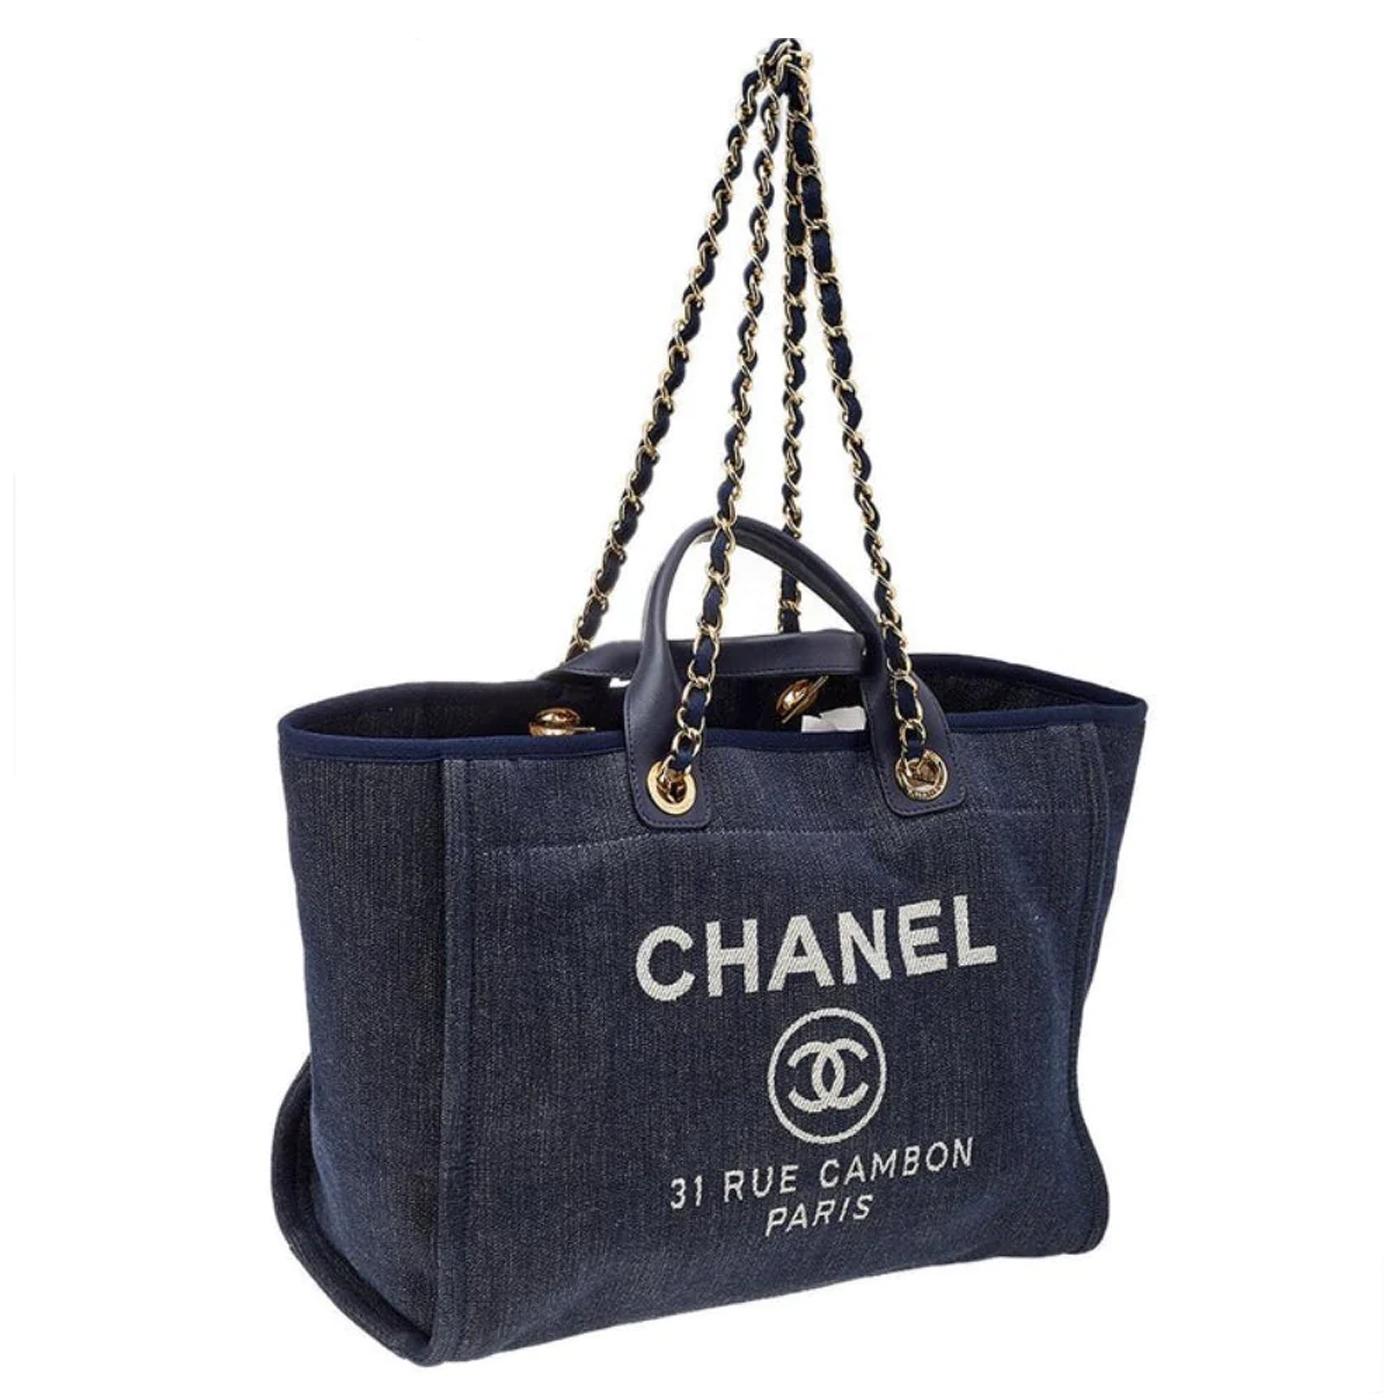 Ce sac est orné de logos Chanel et du nom de la rue où se trouve le célèbre magasin phare de Chanel, 